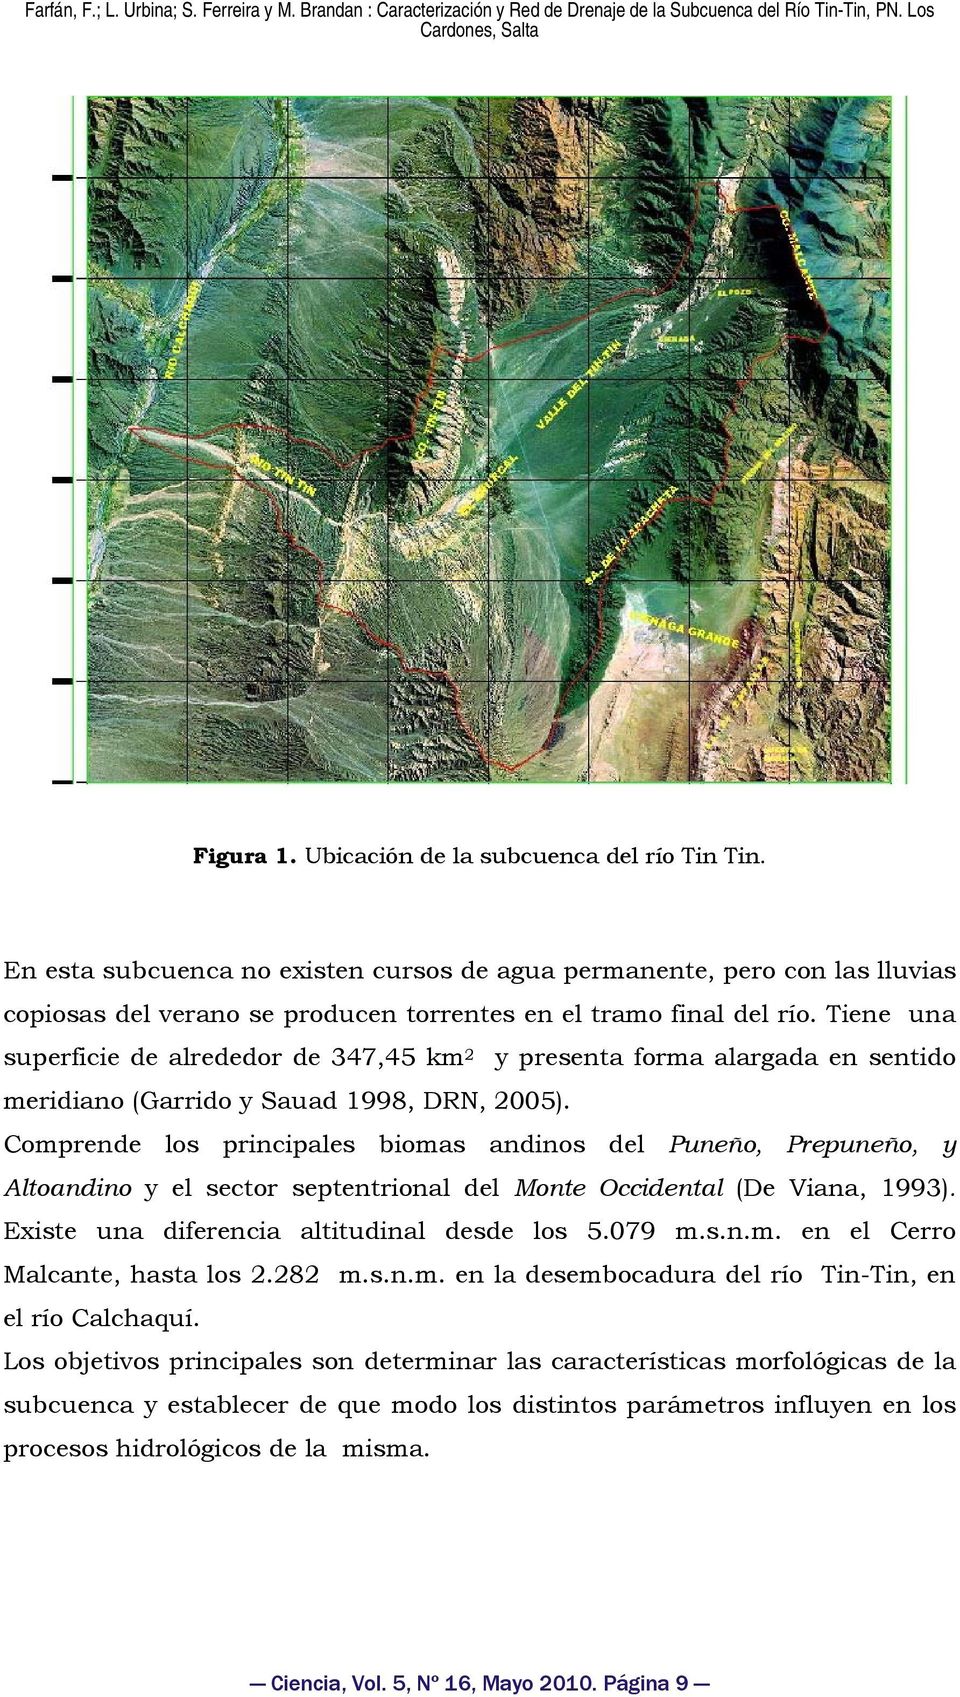 Comprende los principales biomas andinos del Puneño, Prepuneño, y ltoandino y el sector septentrional del Monte Occidental (De Viana, 1993). Existe una diferencia altitudinal desde los 5.079 m.s.n.m. en el Cerro Malcante, hasta los 2.